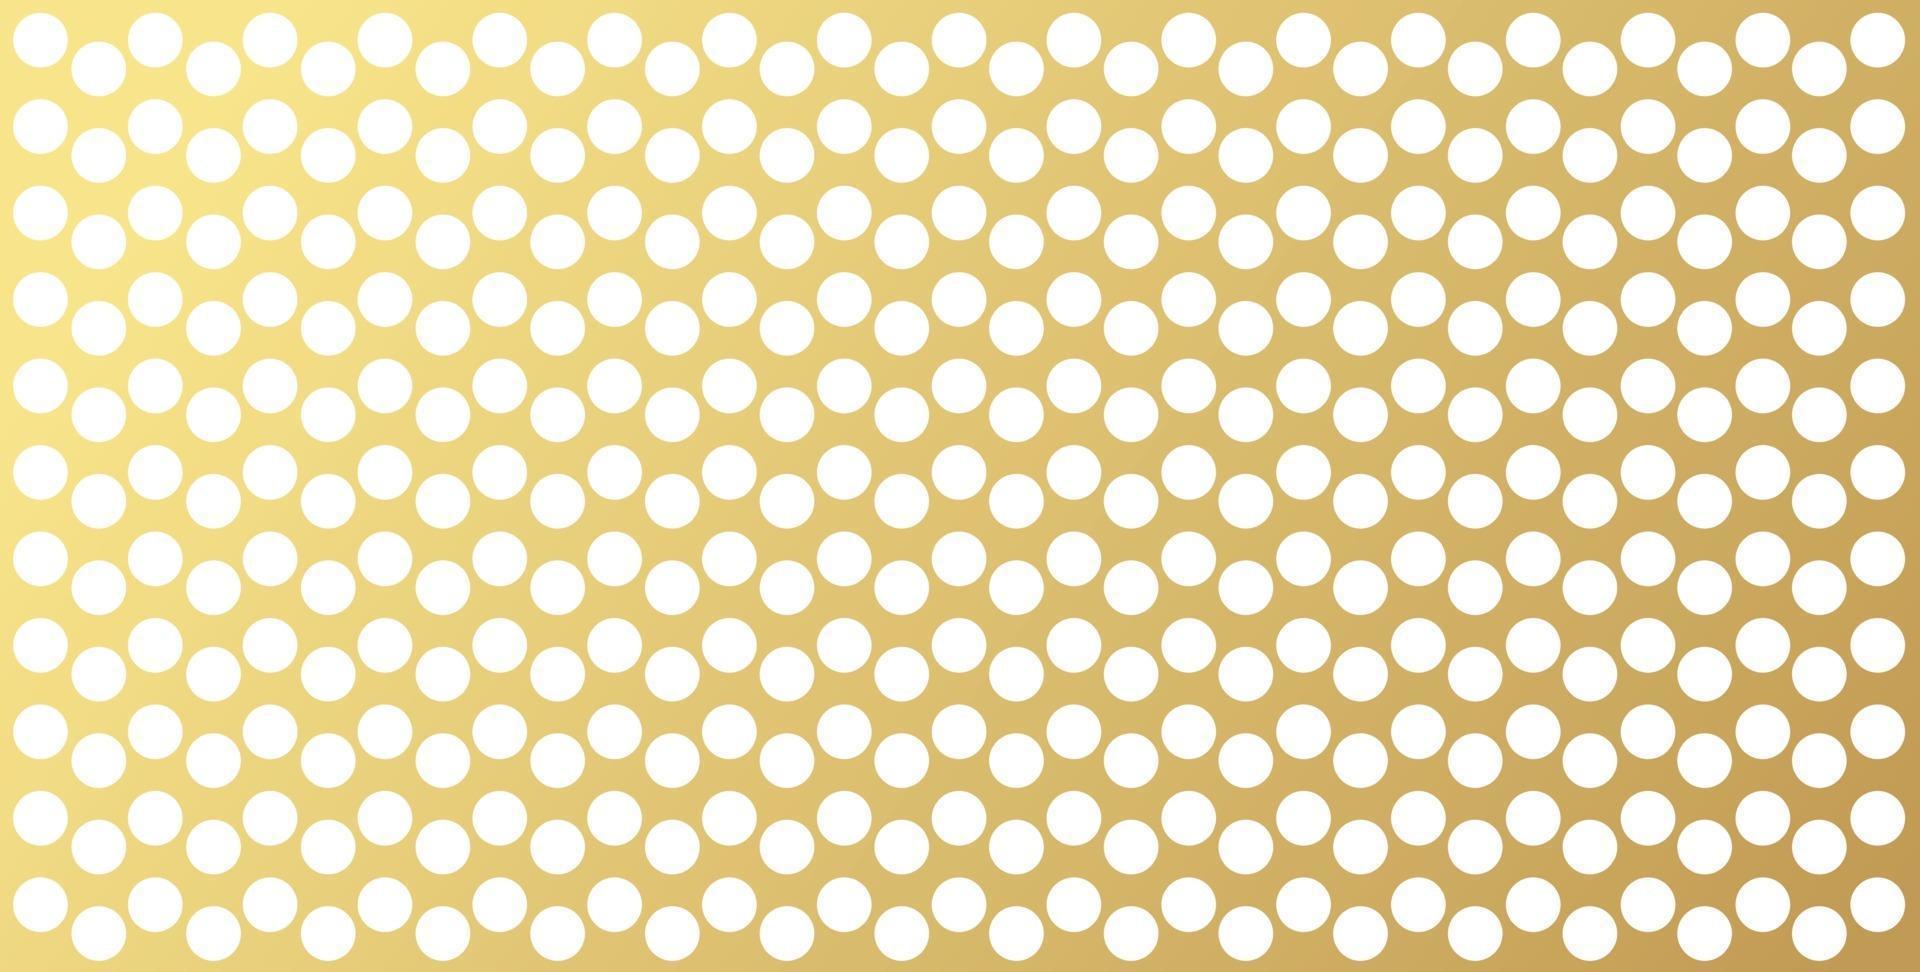 motif de pois or, fond coloré - fond abstrait de vecteur